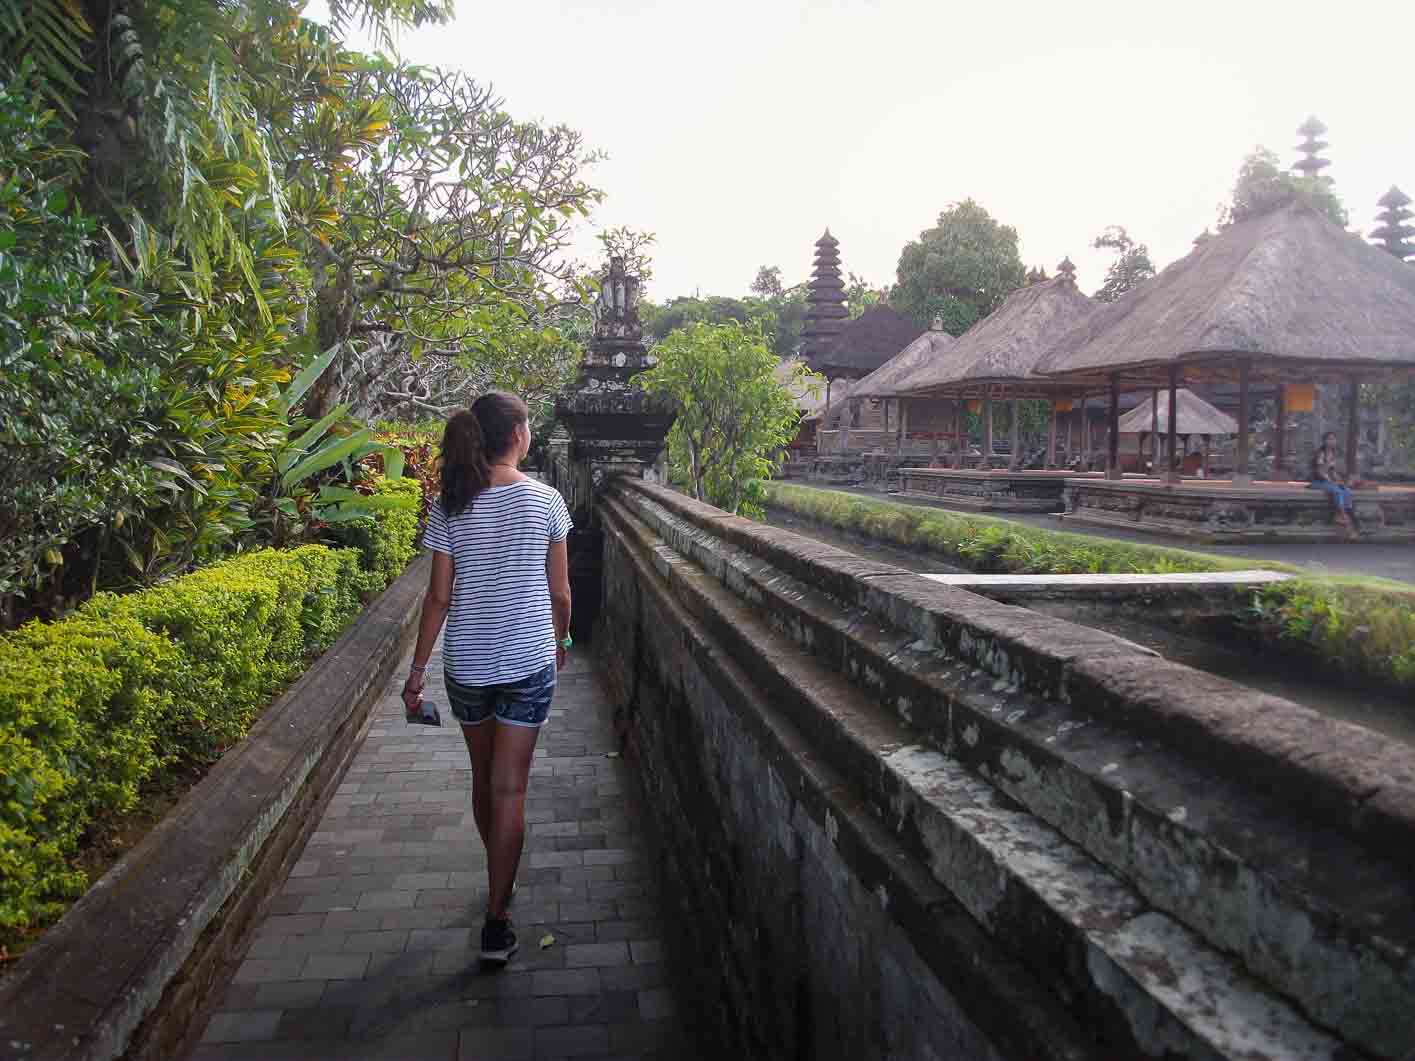 Templo de Bali Taman Ayun Indonesia. Templo del bello jardin